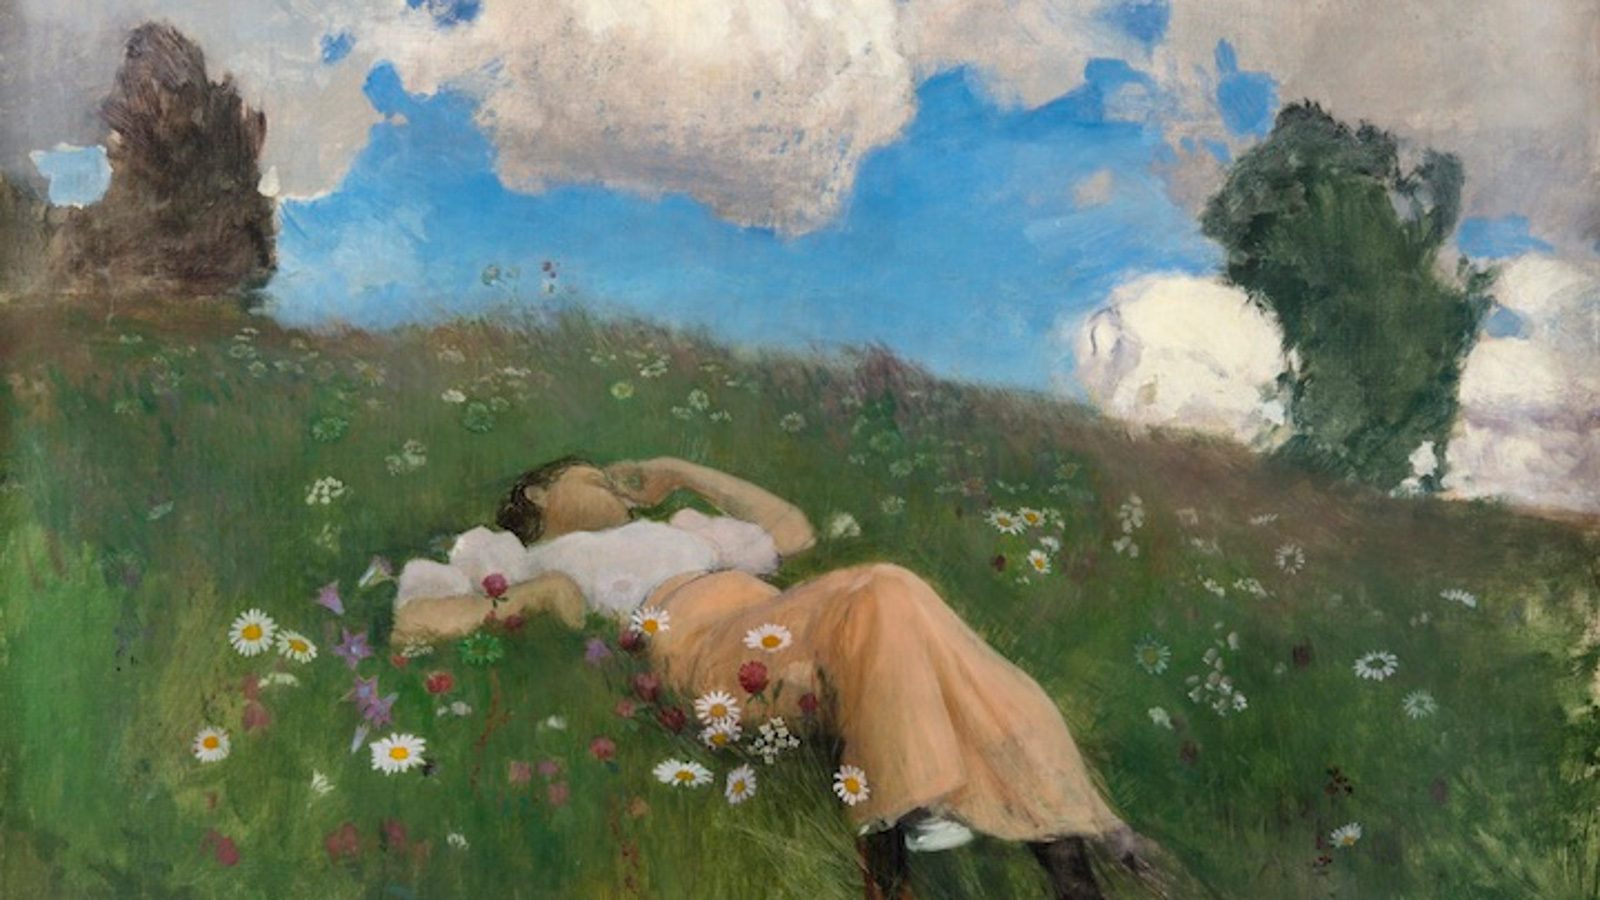 Kuvassa on Saimi makaamassa kesäisellä mäkirinteen kedolla, jossa on valkoisia kukkia ja rinteen yläpäässä on molemmin puolin katajat.  Taivaalla on poutapilviä ja sinistä taivasta.